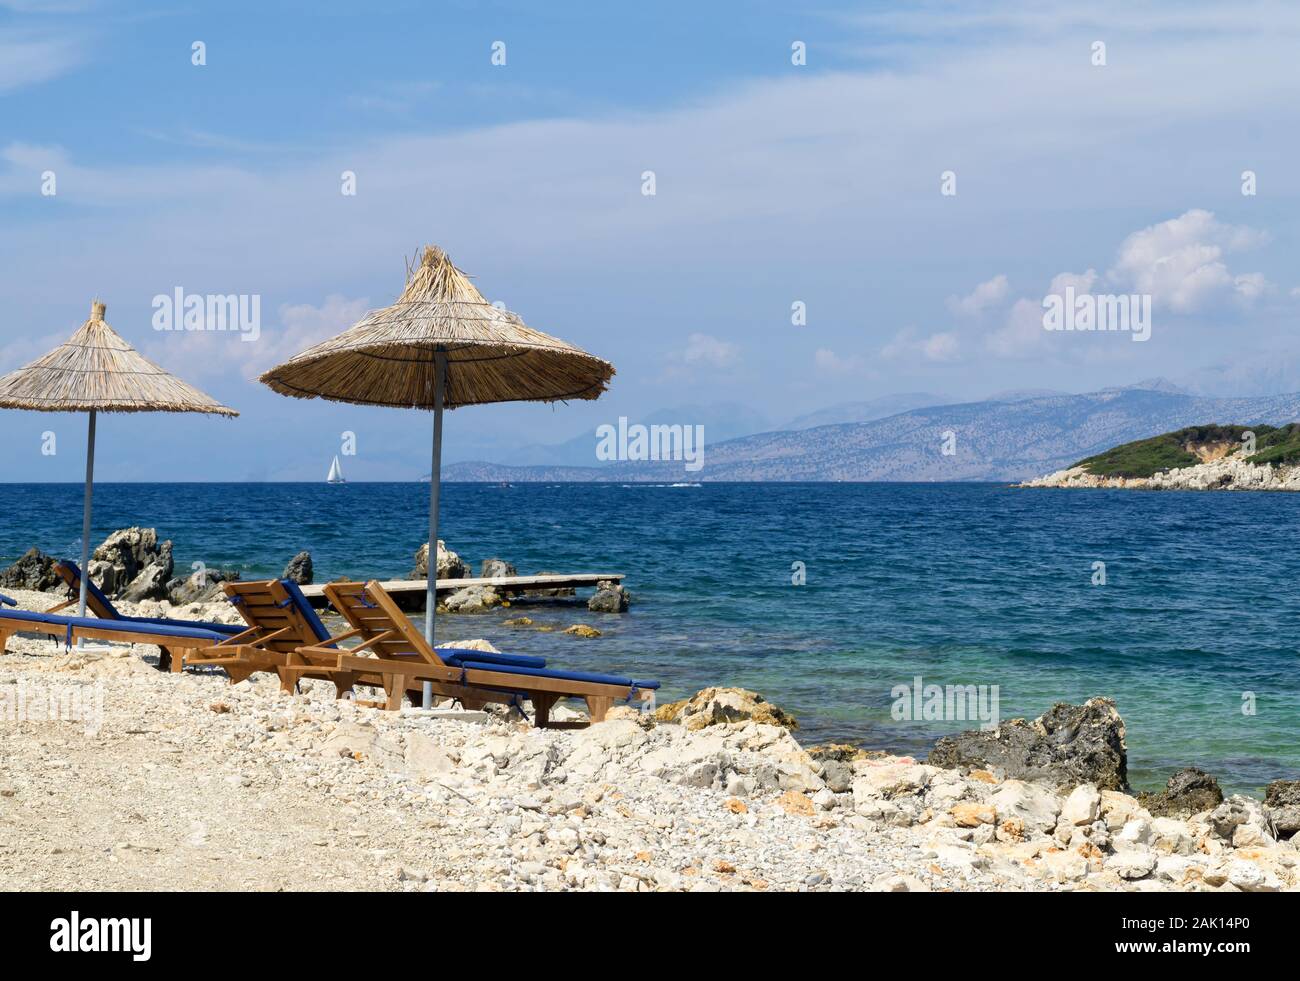 Felsigen Strand am Ufer des Ionischen Meer mit Sonnenliegen und Sonnenschirme Stroh. Blau und tourquse Meer im Hintergrund, niemand. Sommertag. Ksamil, Al Stockfoto